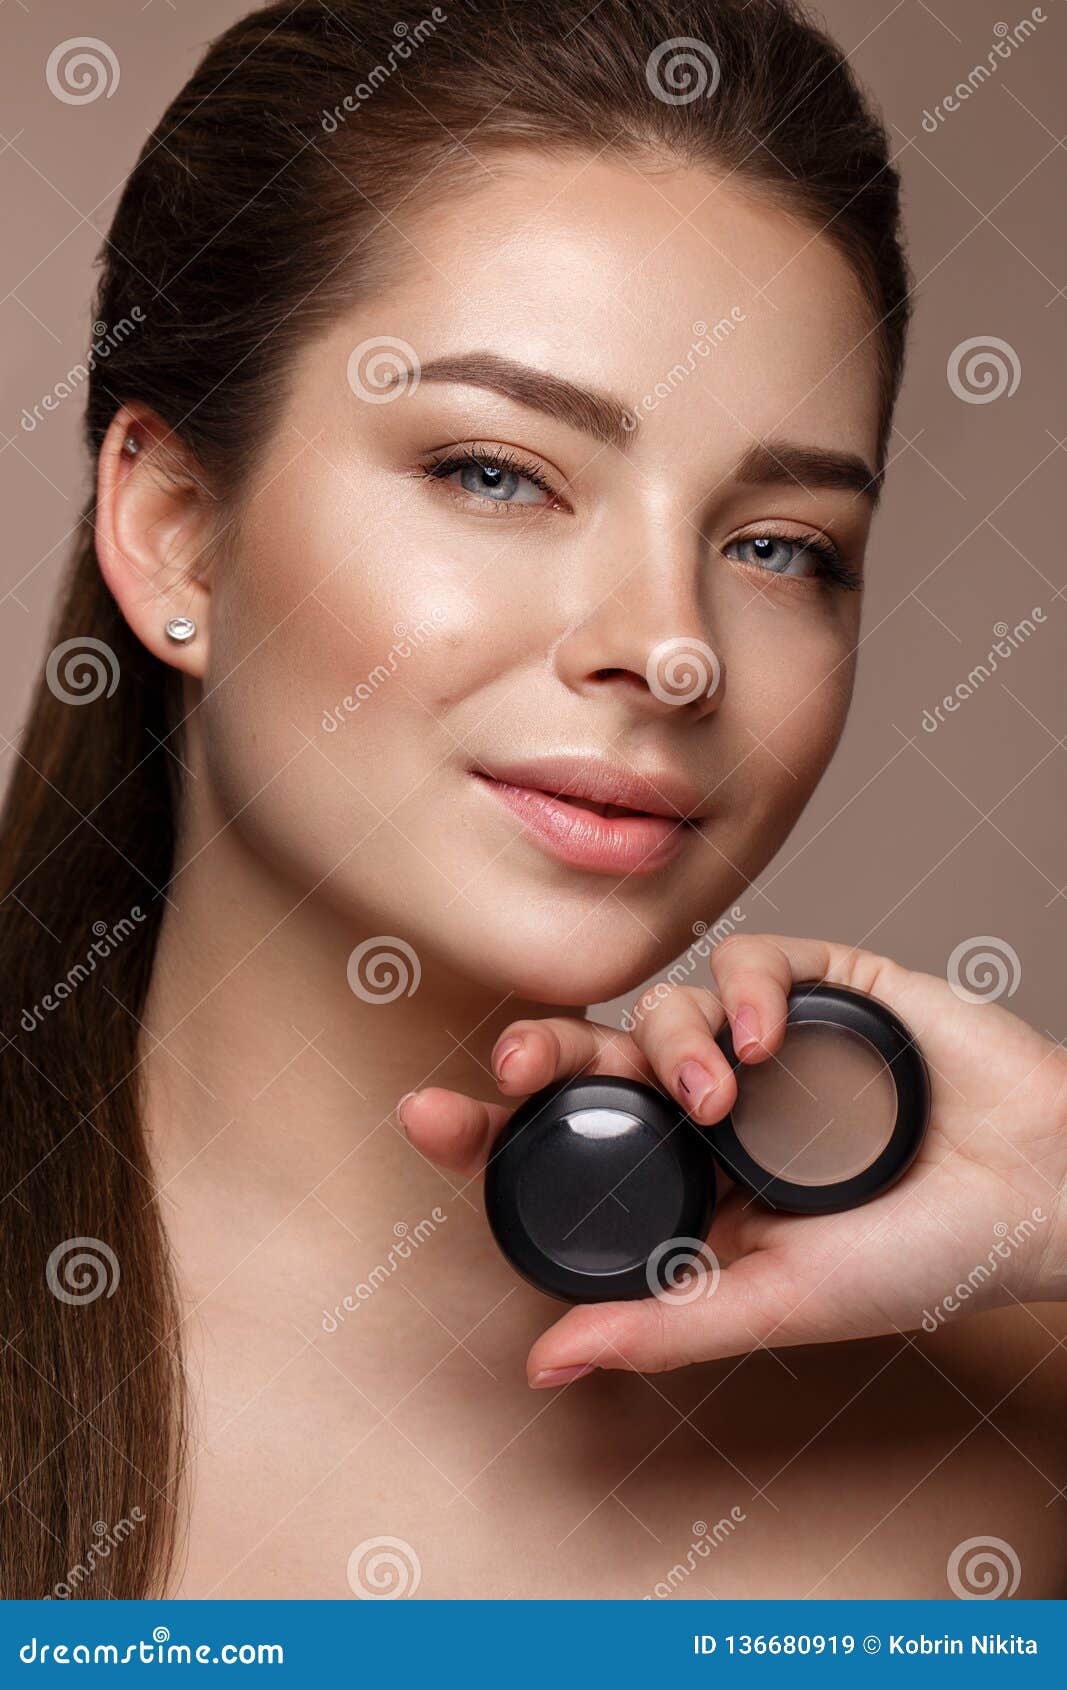 Красивая маленькая девочка с естественным обнаженным макияжем с косметикой в руках Сторона красотки Фото принятое в студию